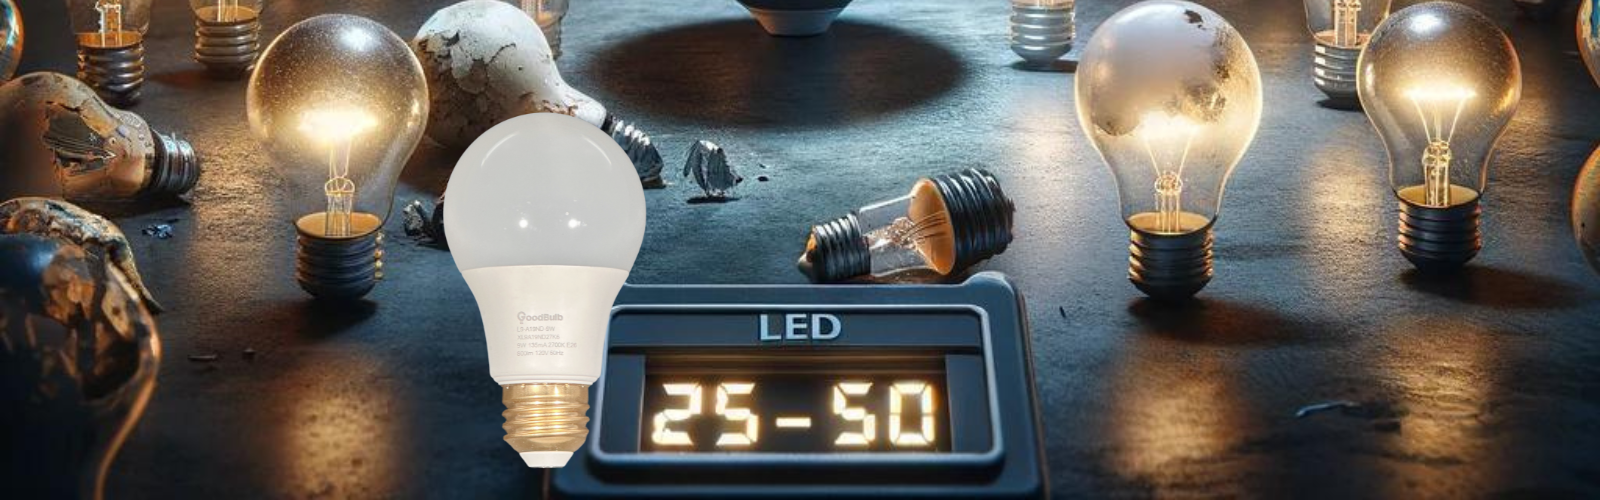 LED last longer, 25 to 50 times longer